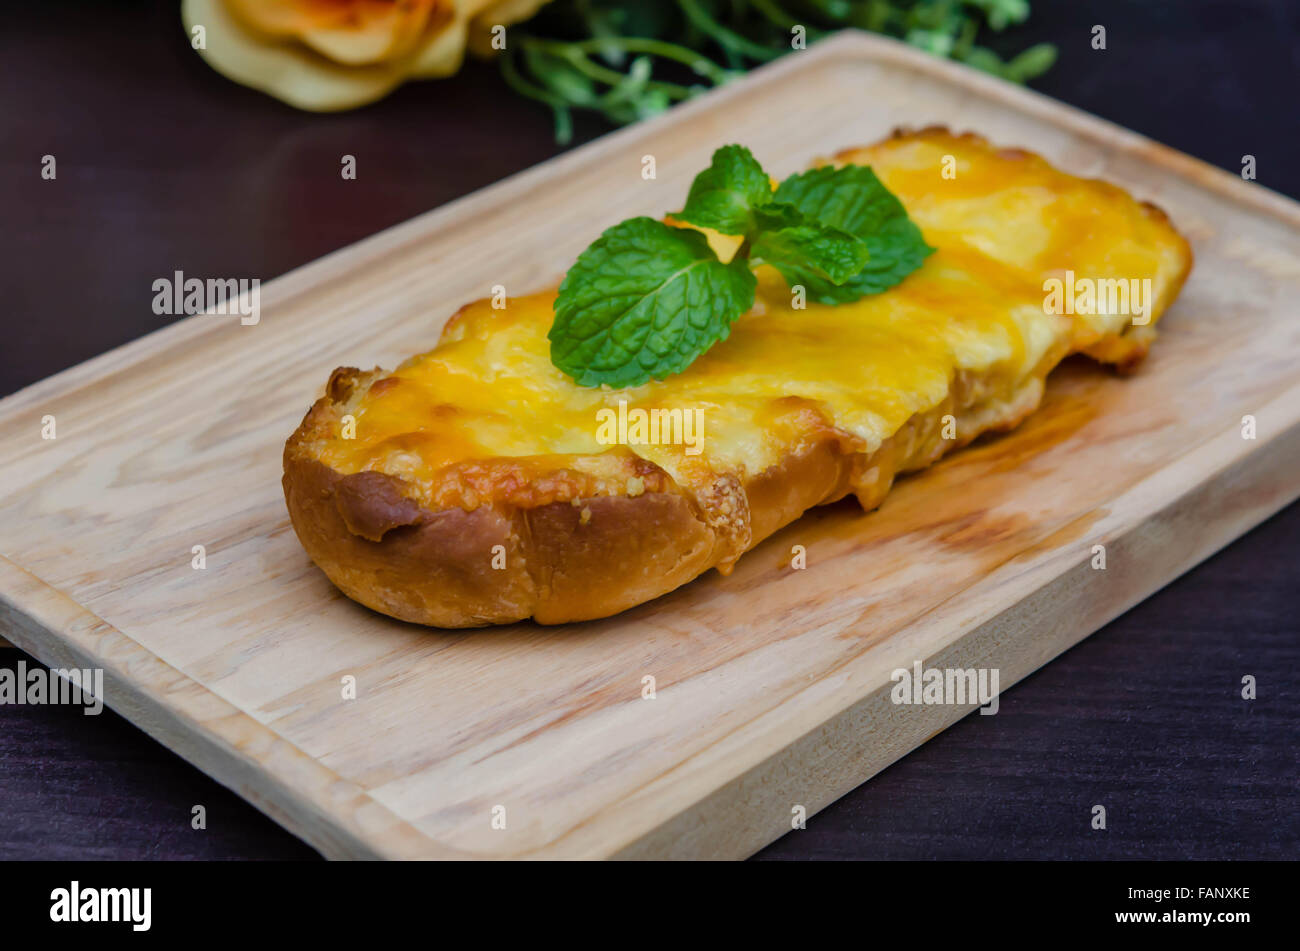 geröstetes hausgemachtes Knoblauchbrot, geschmolzenem Cheddar und Mozzarella, garniert mit Parmesan-Käse Stockfoto